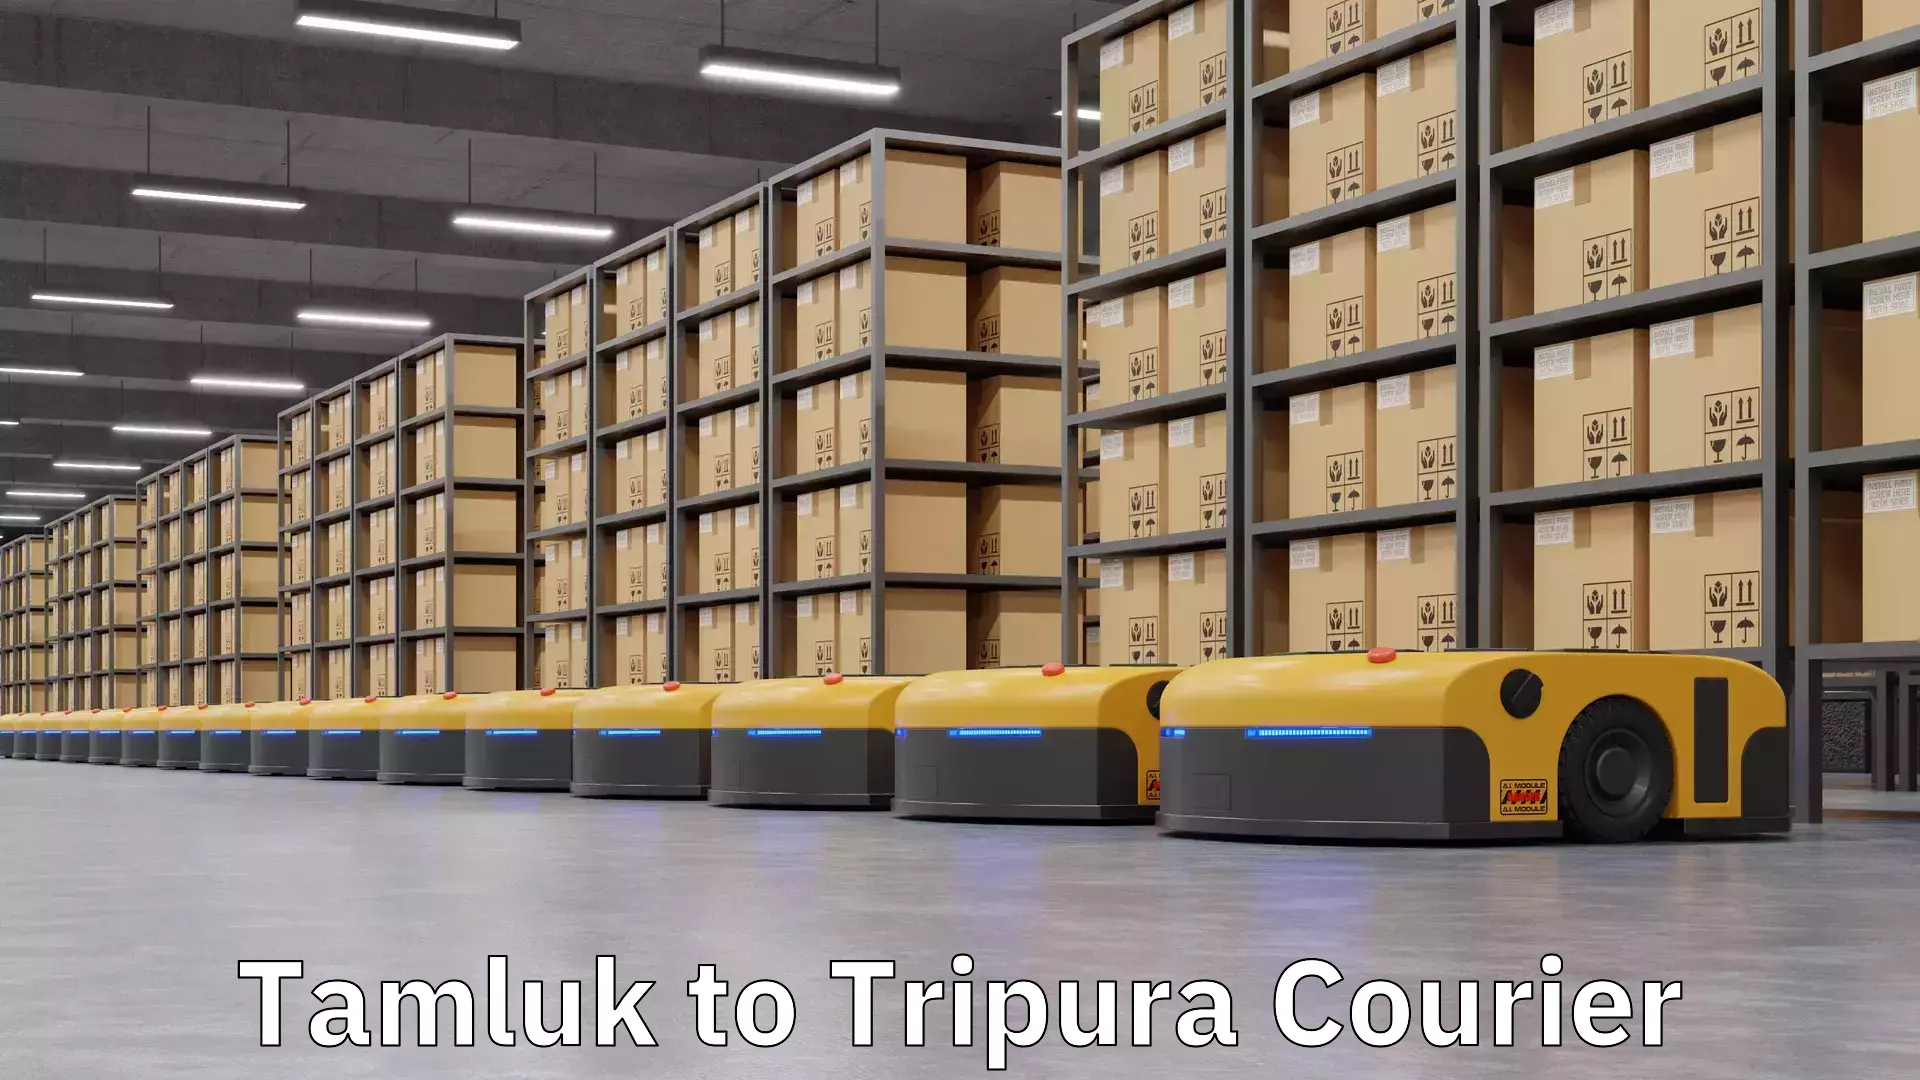 Courier service comparison Tamluk to Tripura